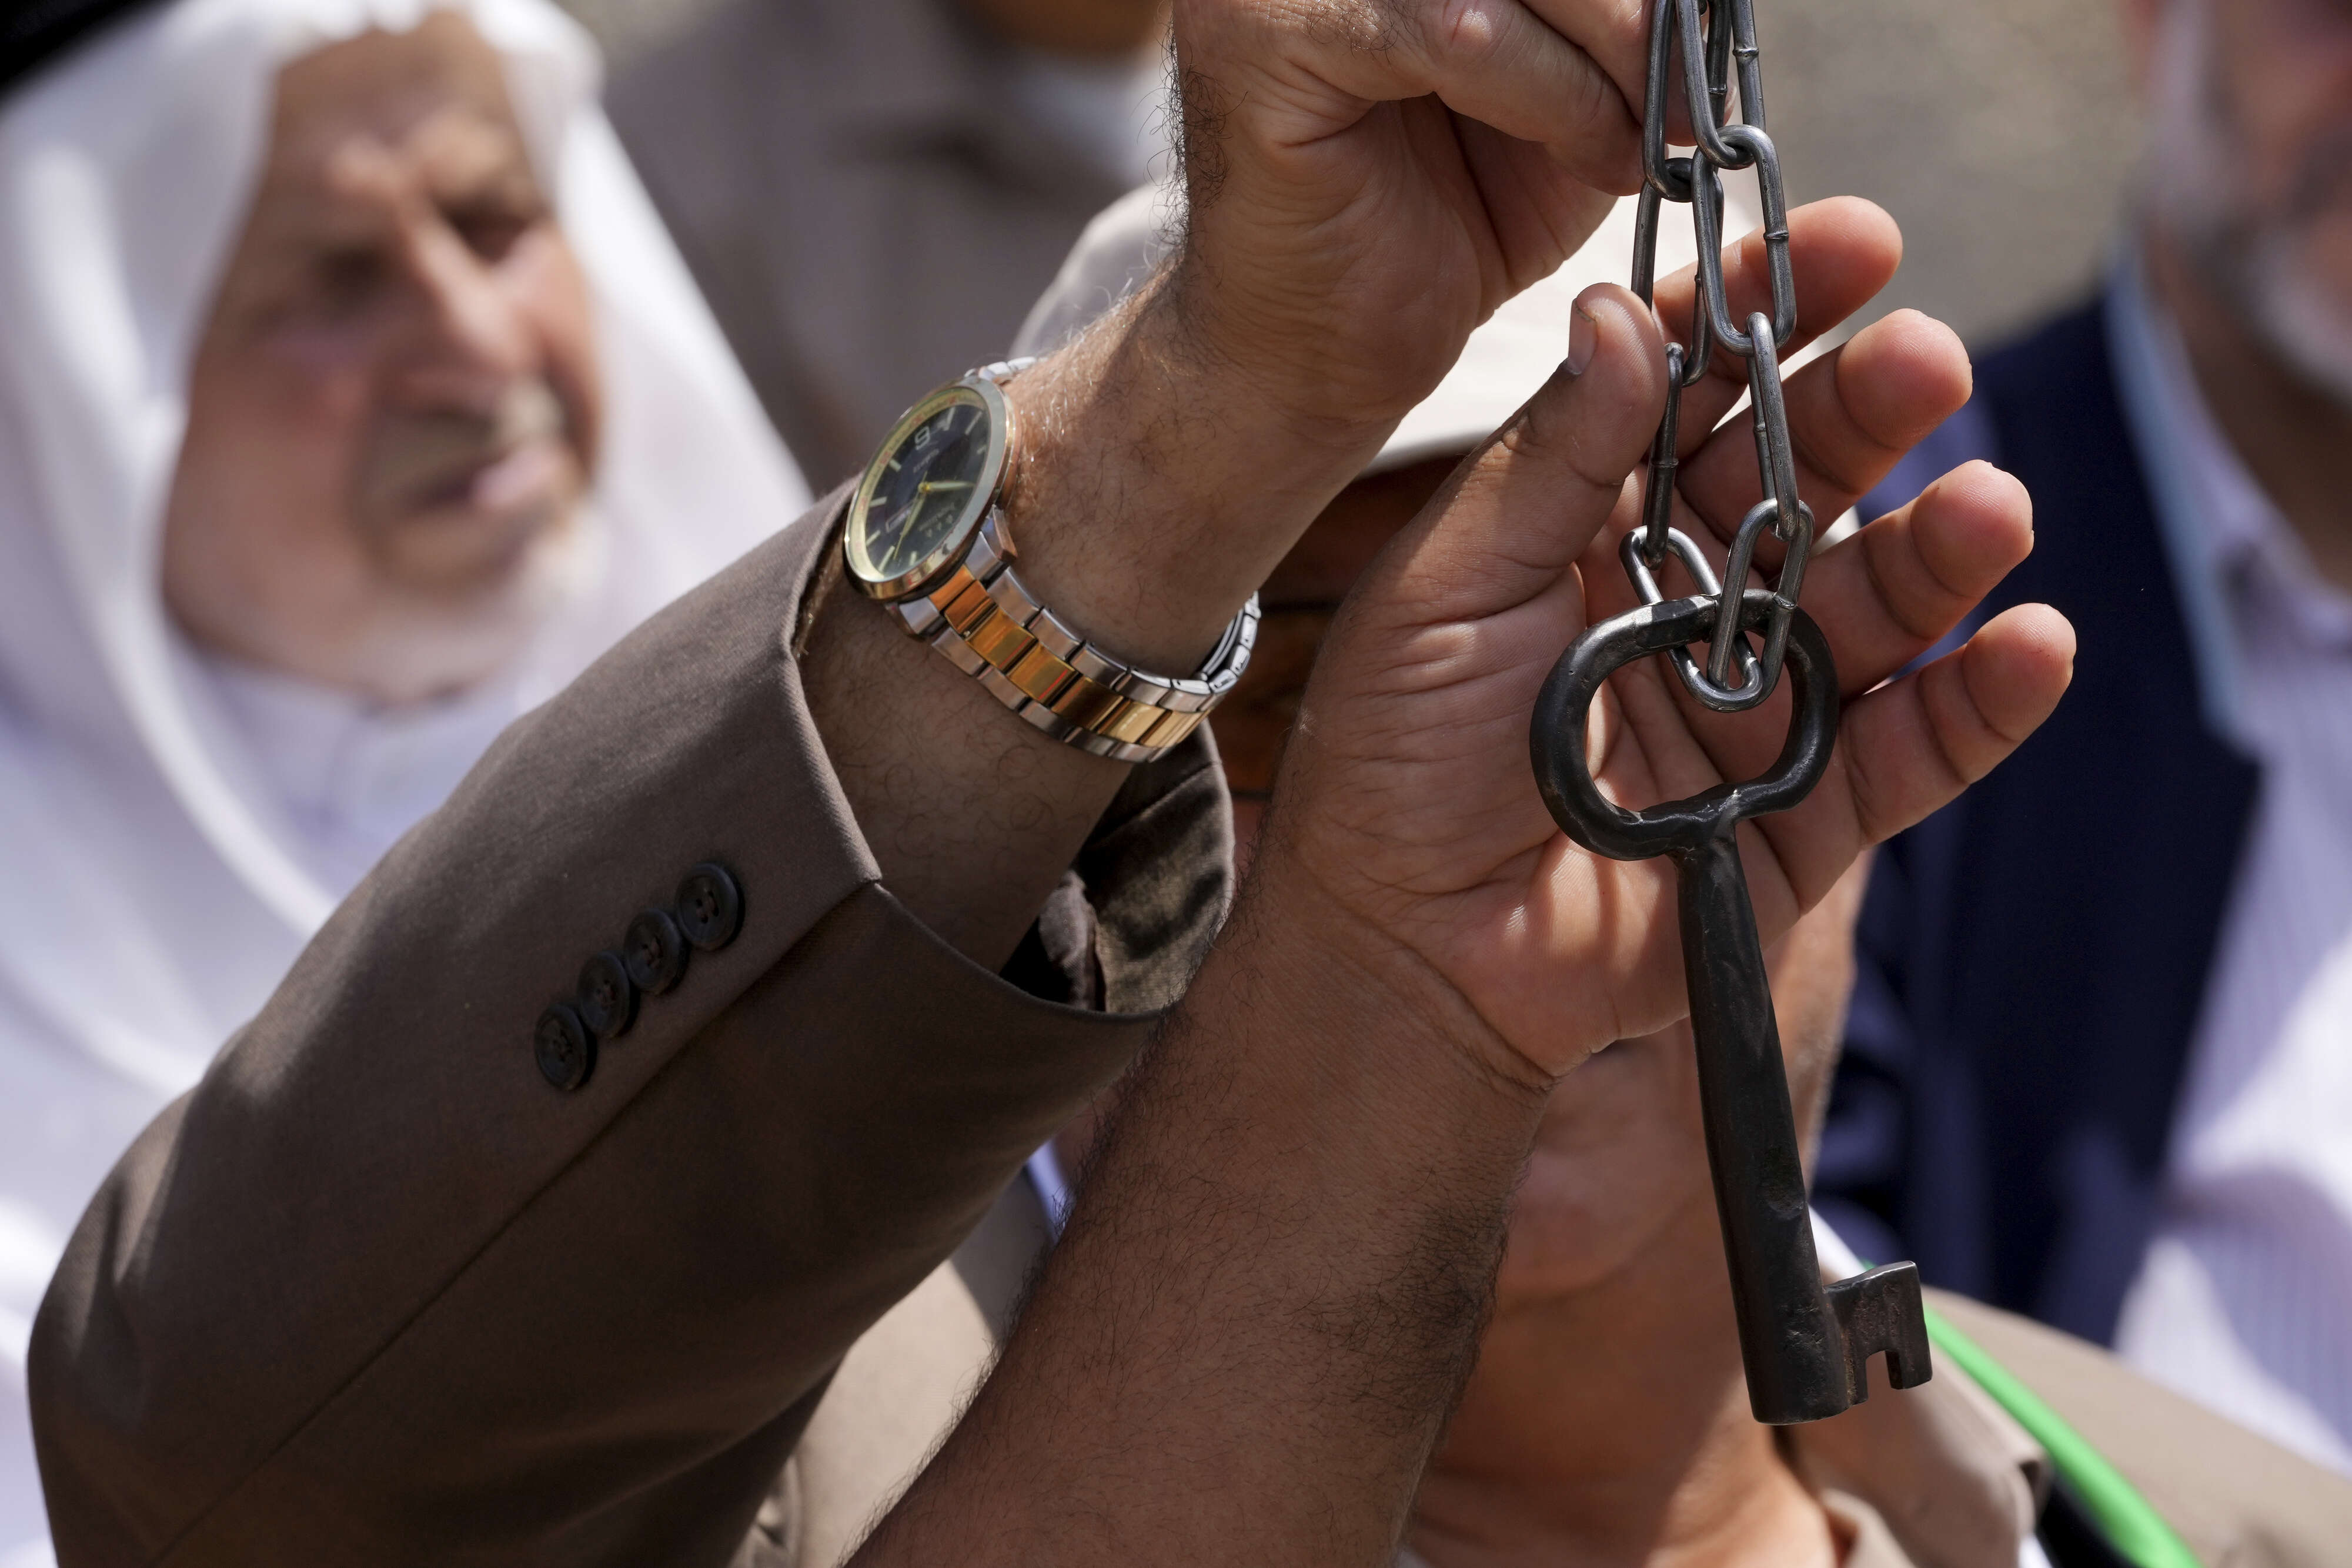 "مفتاح العودة" حاضر في مسيرة العودة بعد 74 عاما من تهجير قسري للفلسطينيين